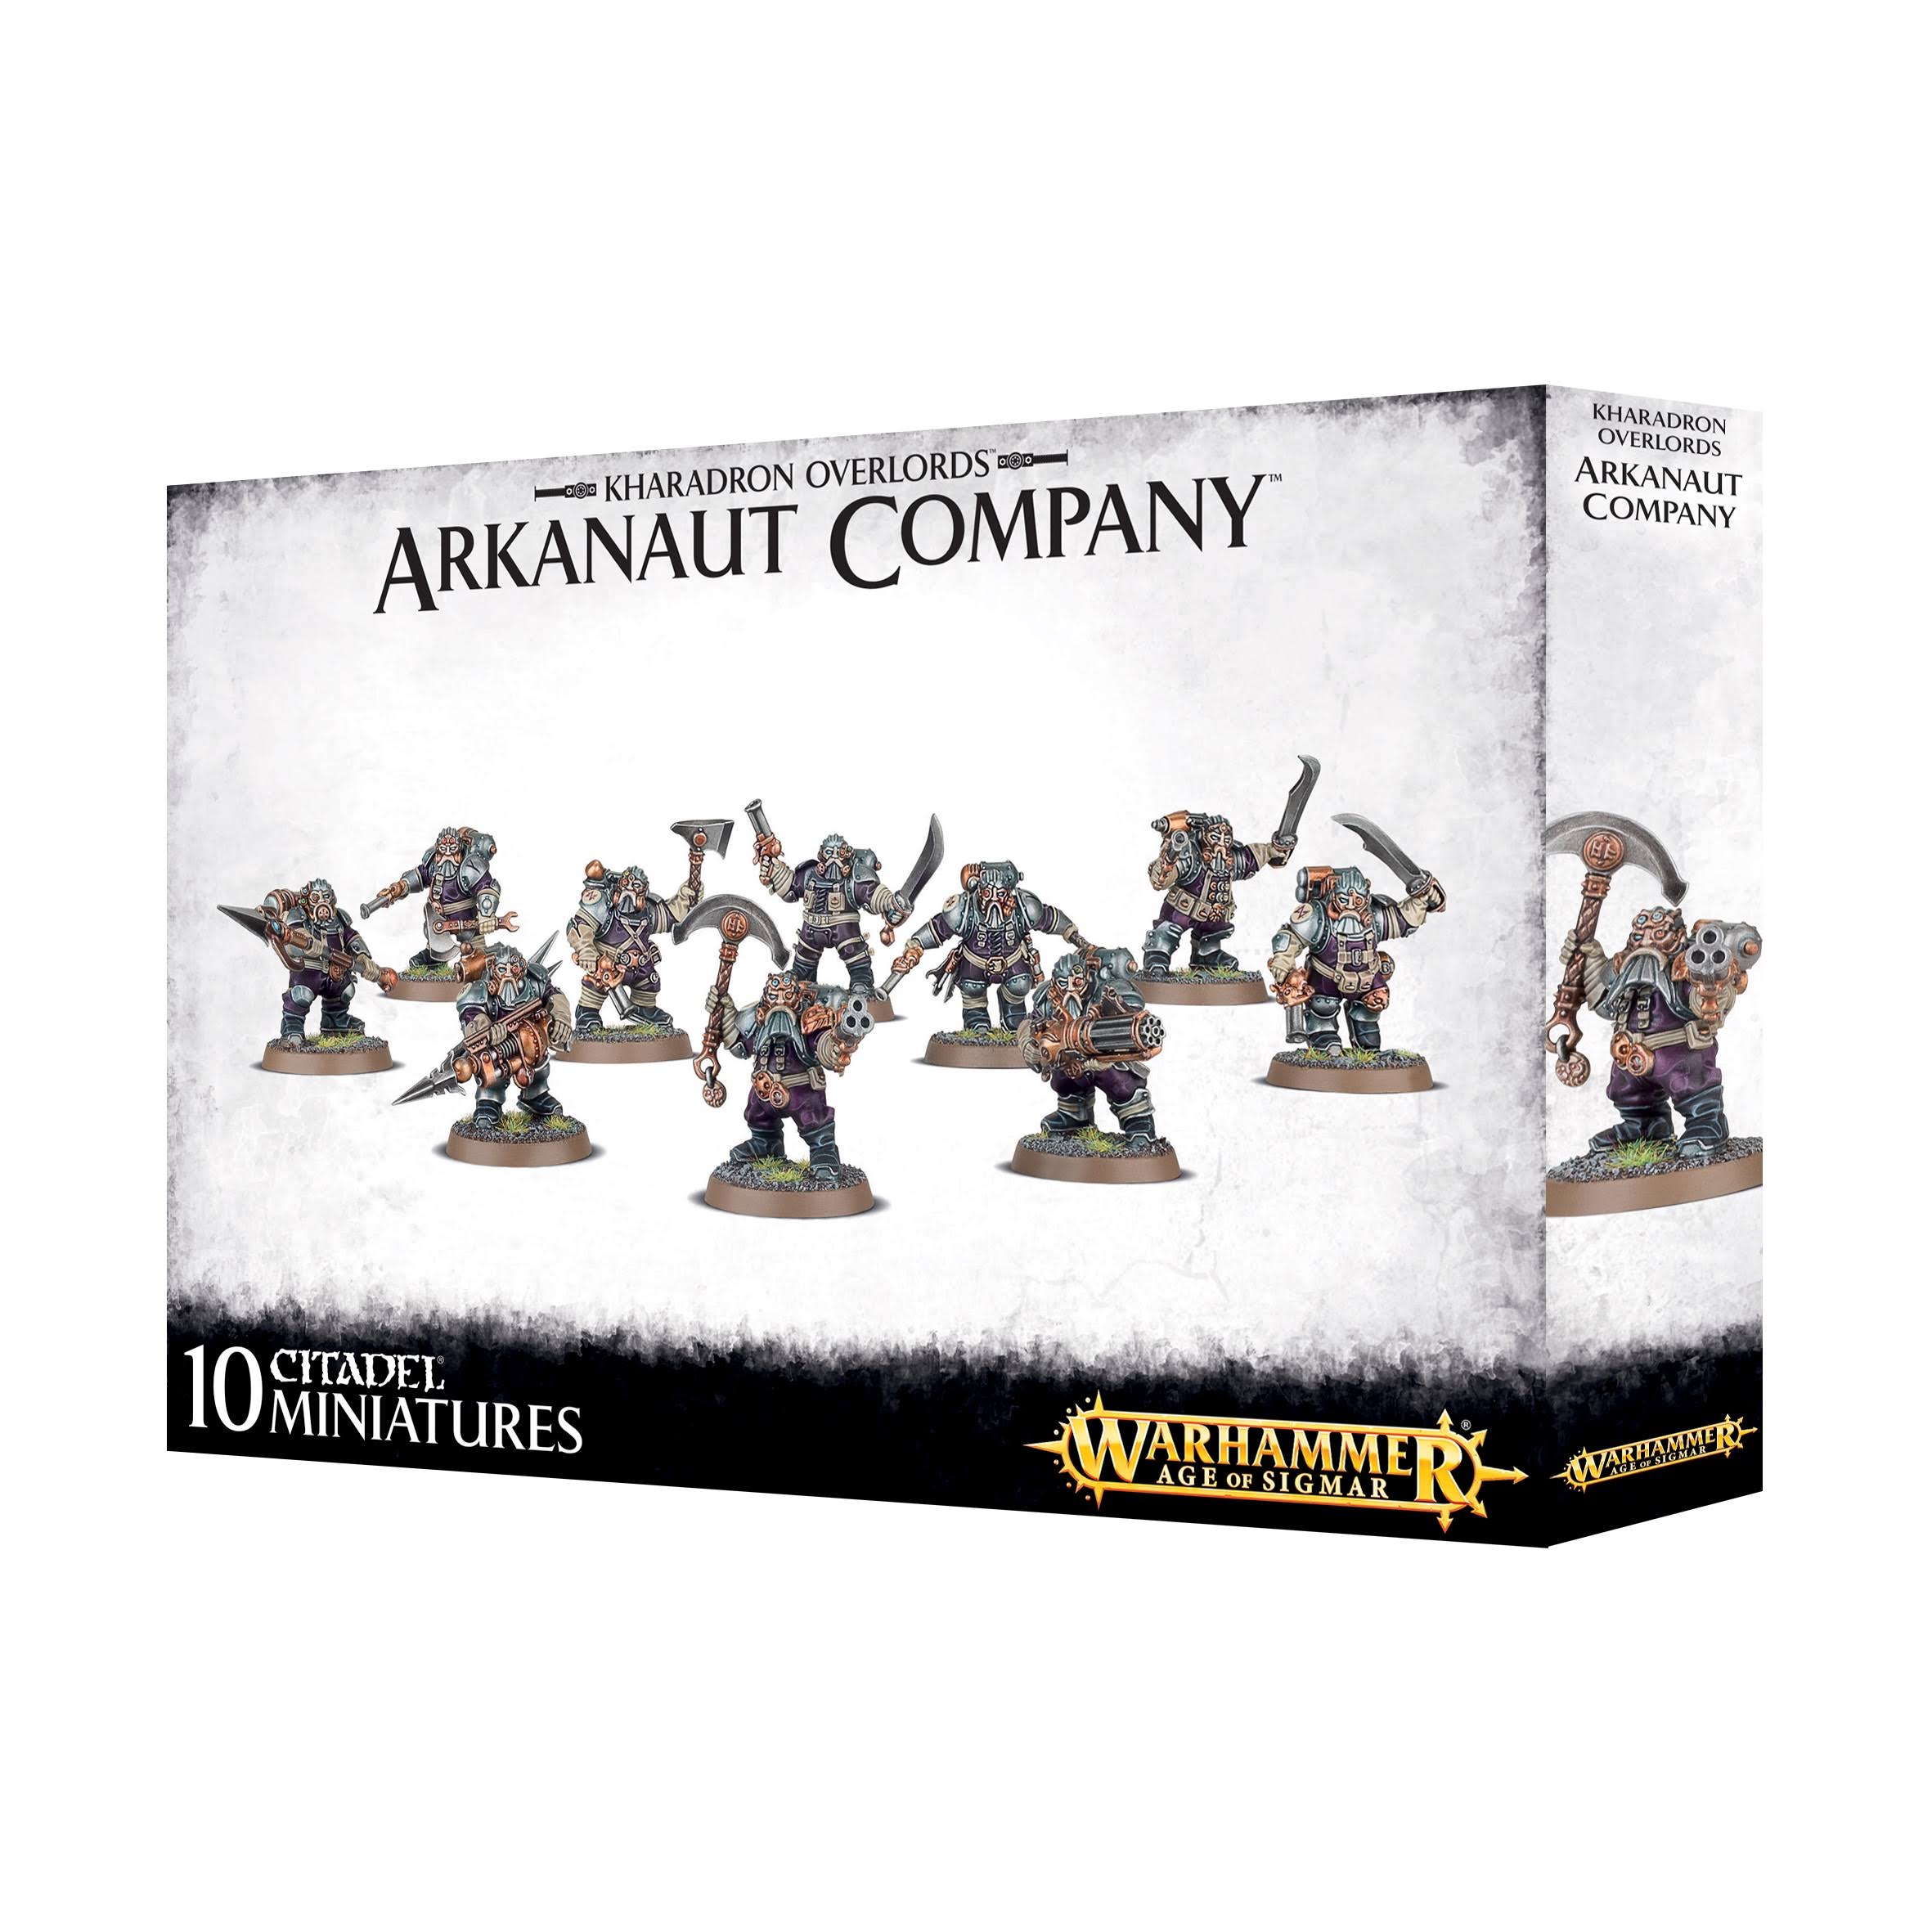 Warhammer 40,000 Kharadron Overlords Arkanaut Company - 10 Citadel Miniatures